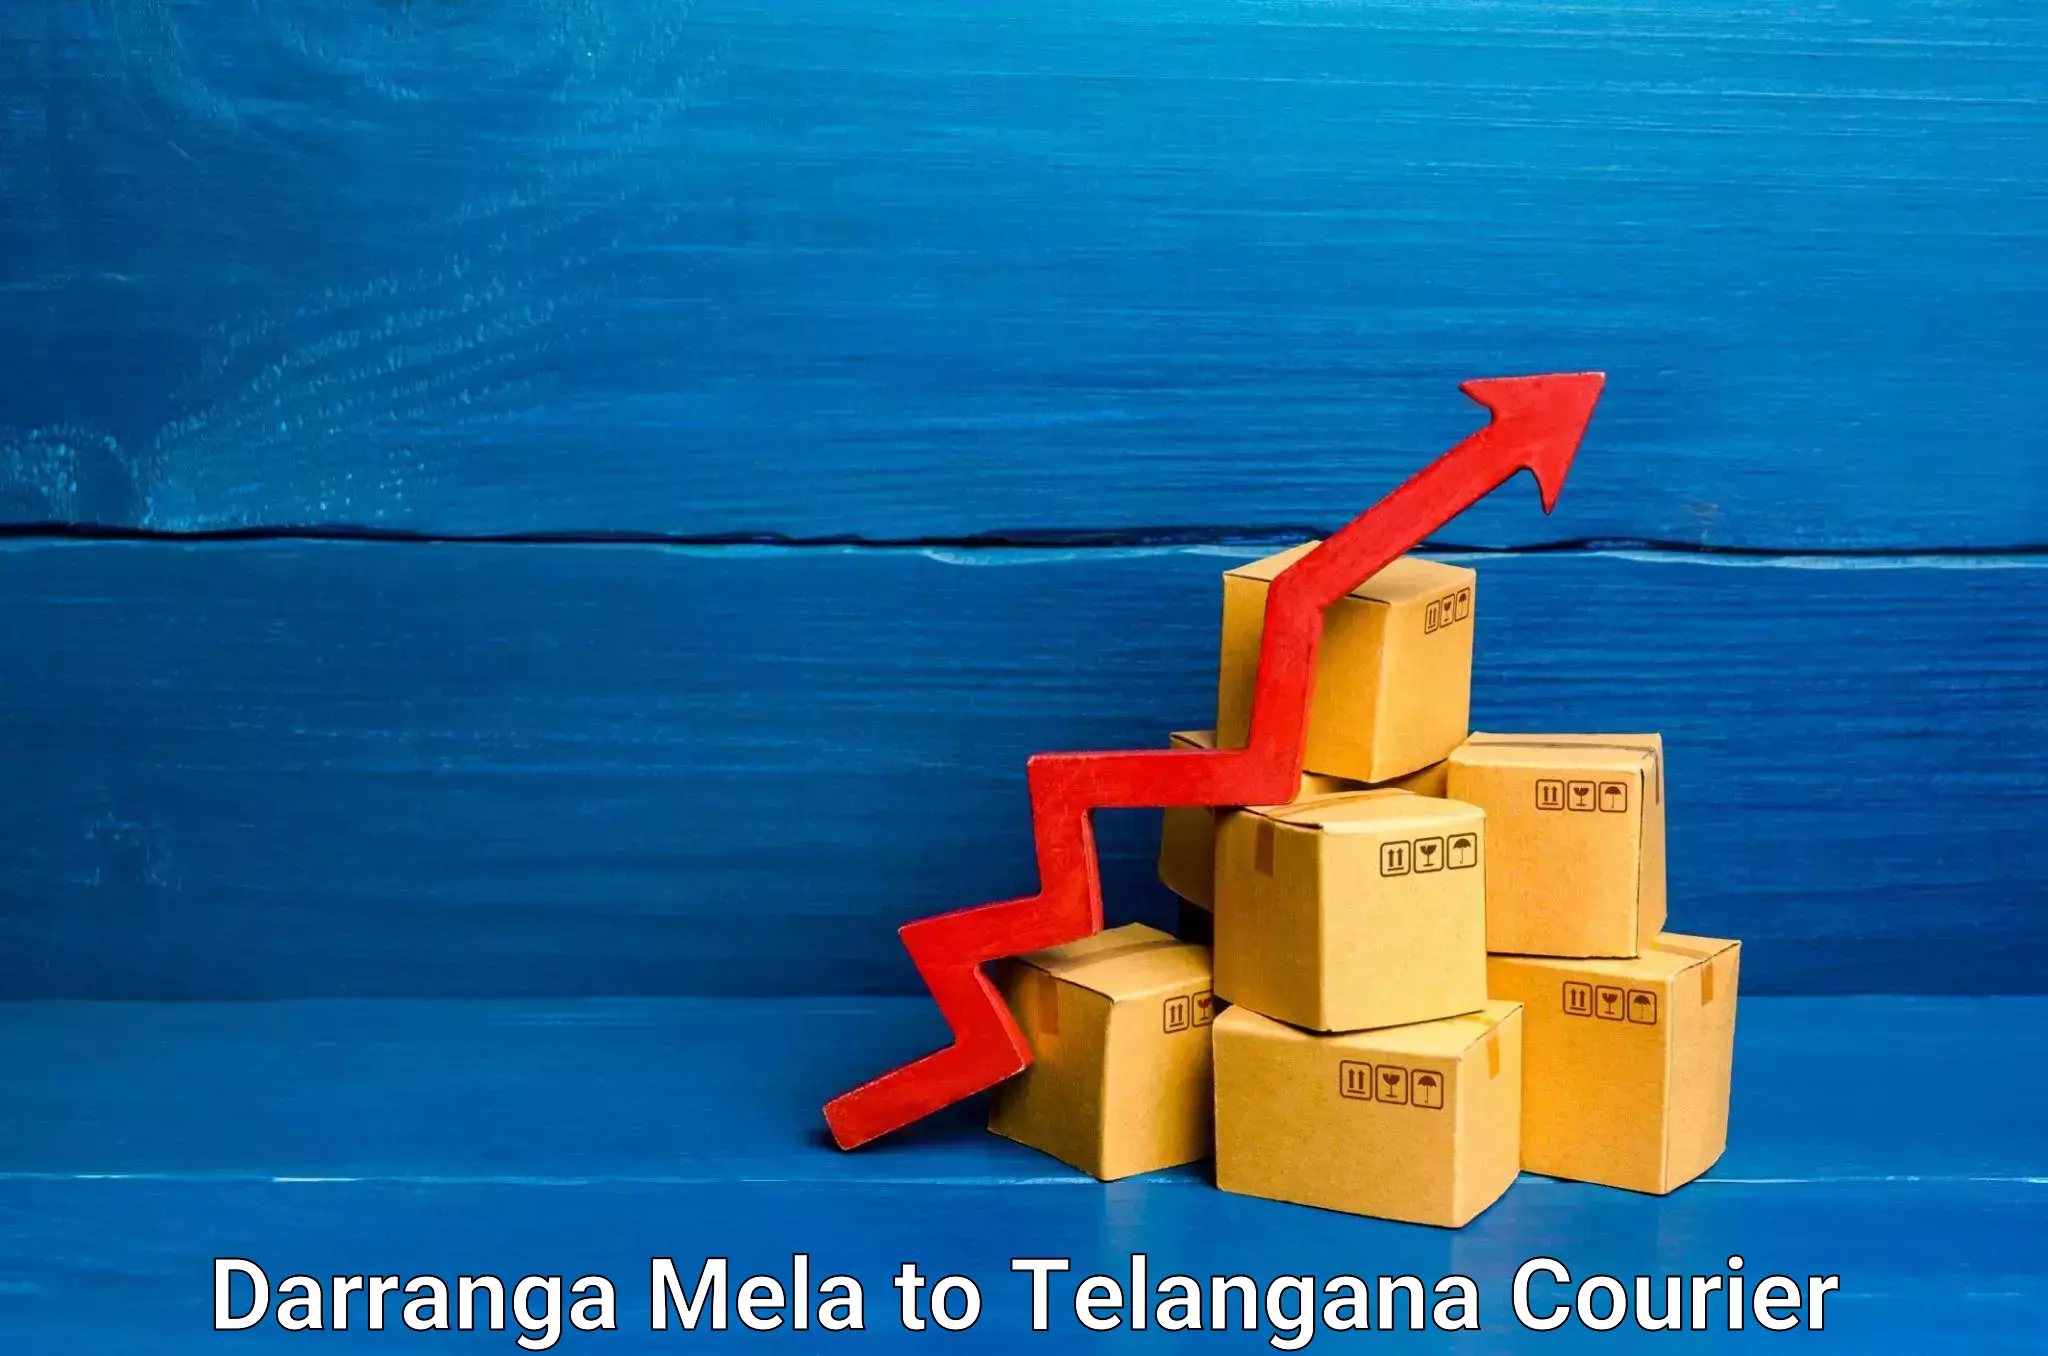 24/7 courier service Darranga Mela to Telangana